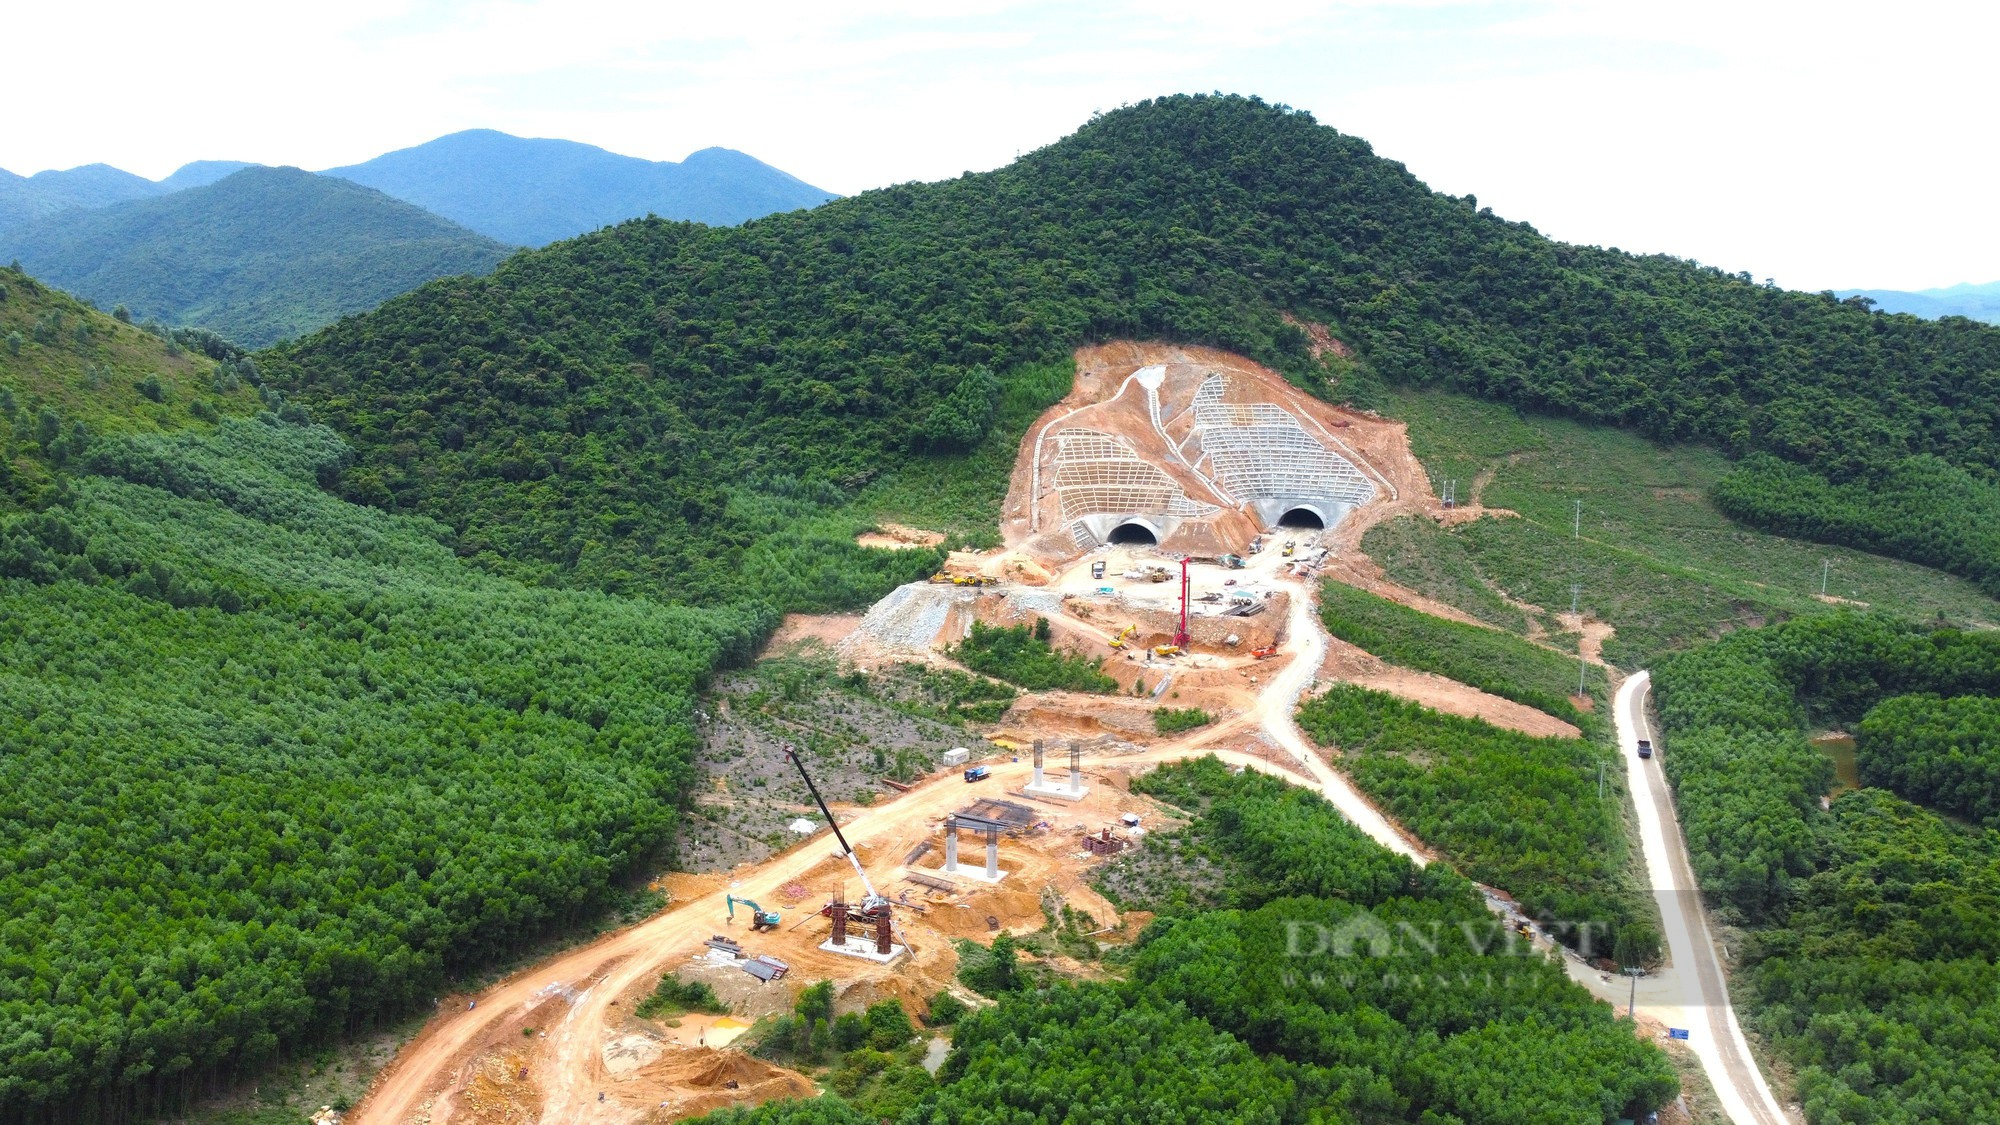 Hà Tĩnh: Cận cảnh công nhân khoét núi, đào hầm dài gần 1 km trên cao tốc - Ảnh 2.